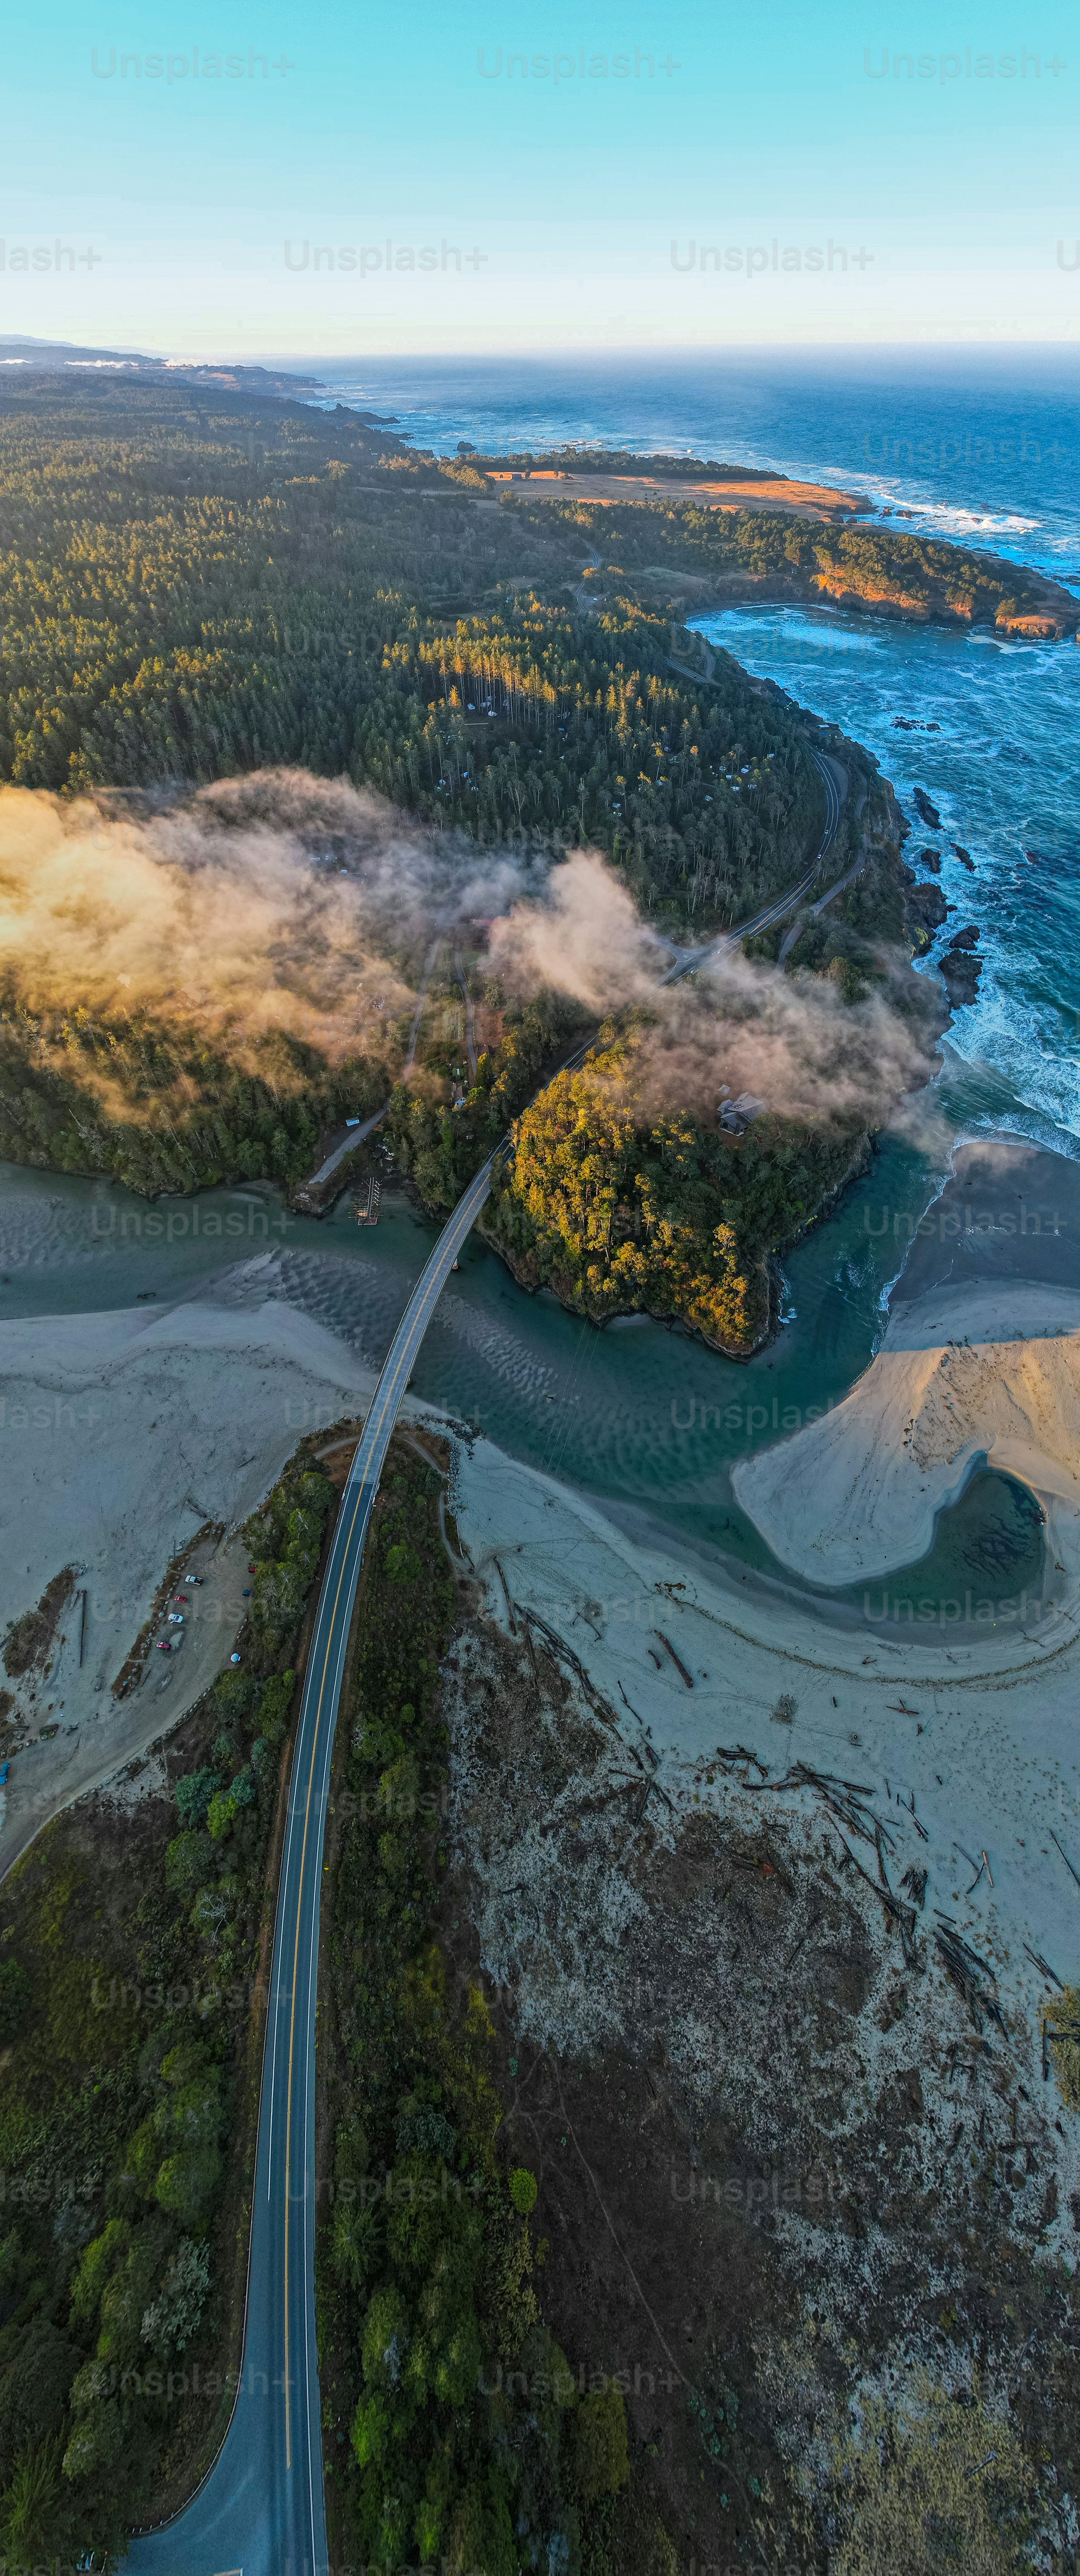 Una vista aérea de una carretera cerca del océano